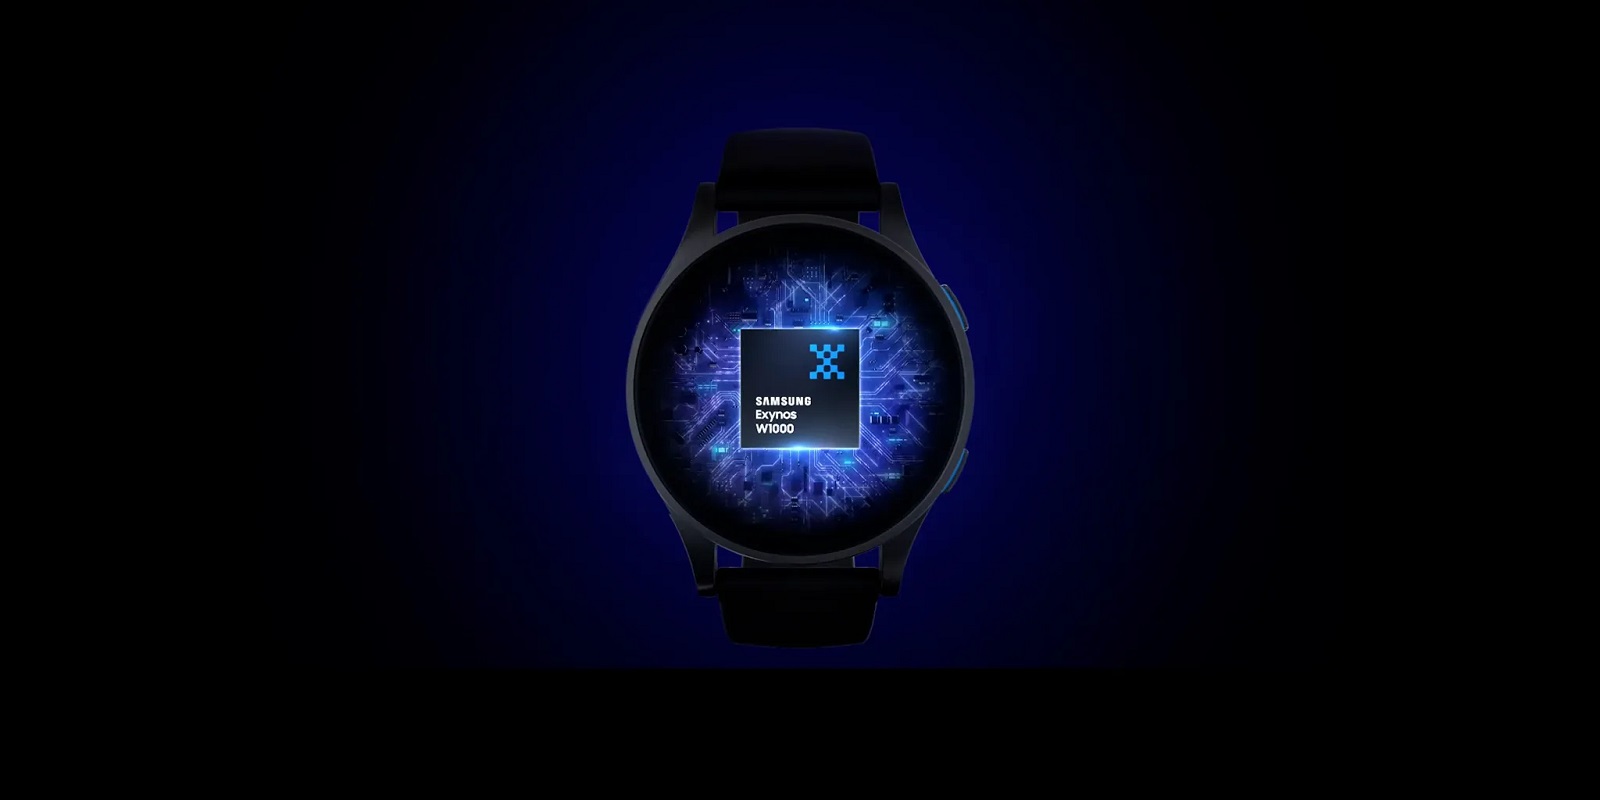 Exynos W1000: cipsetul revoluționar din spatele viitoarelor smartwatch-uri Samsung